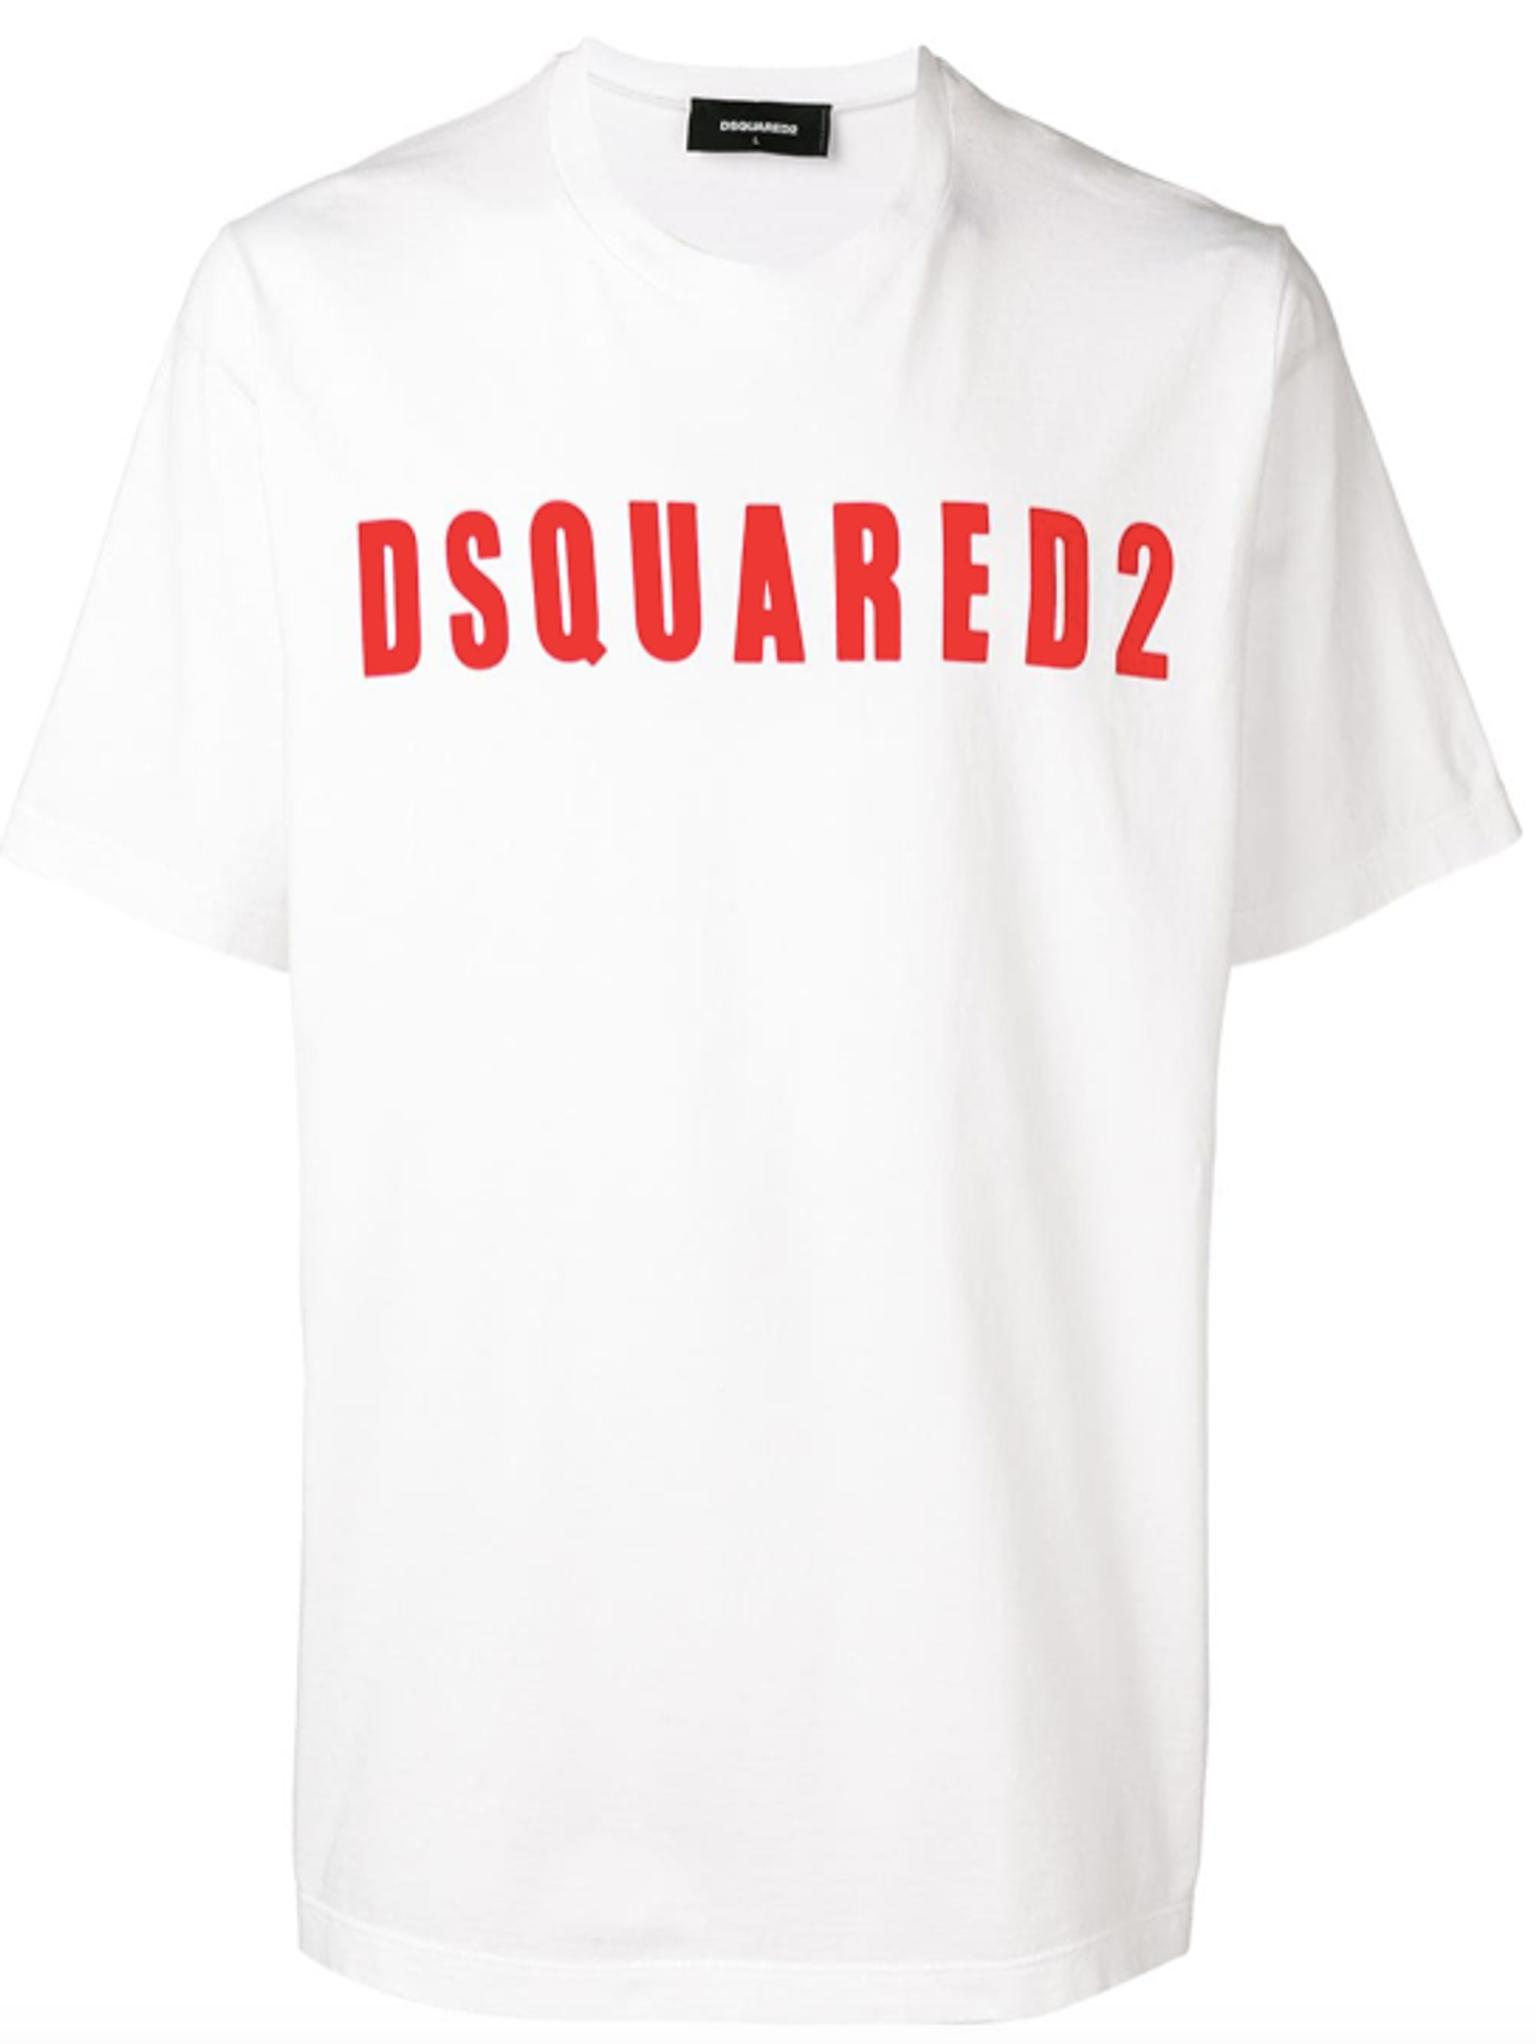 dsquared t shirt xxl